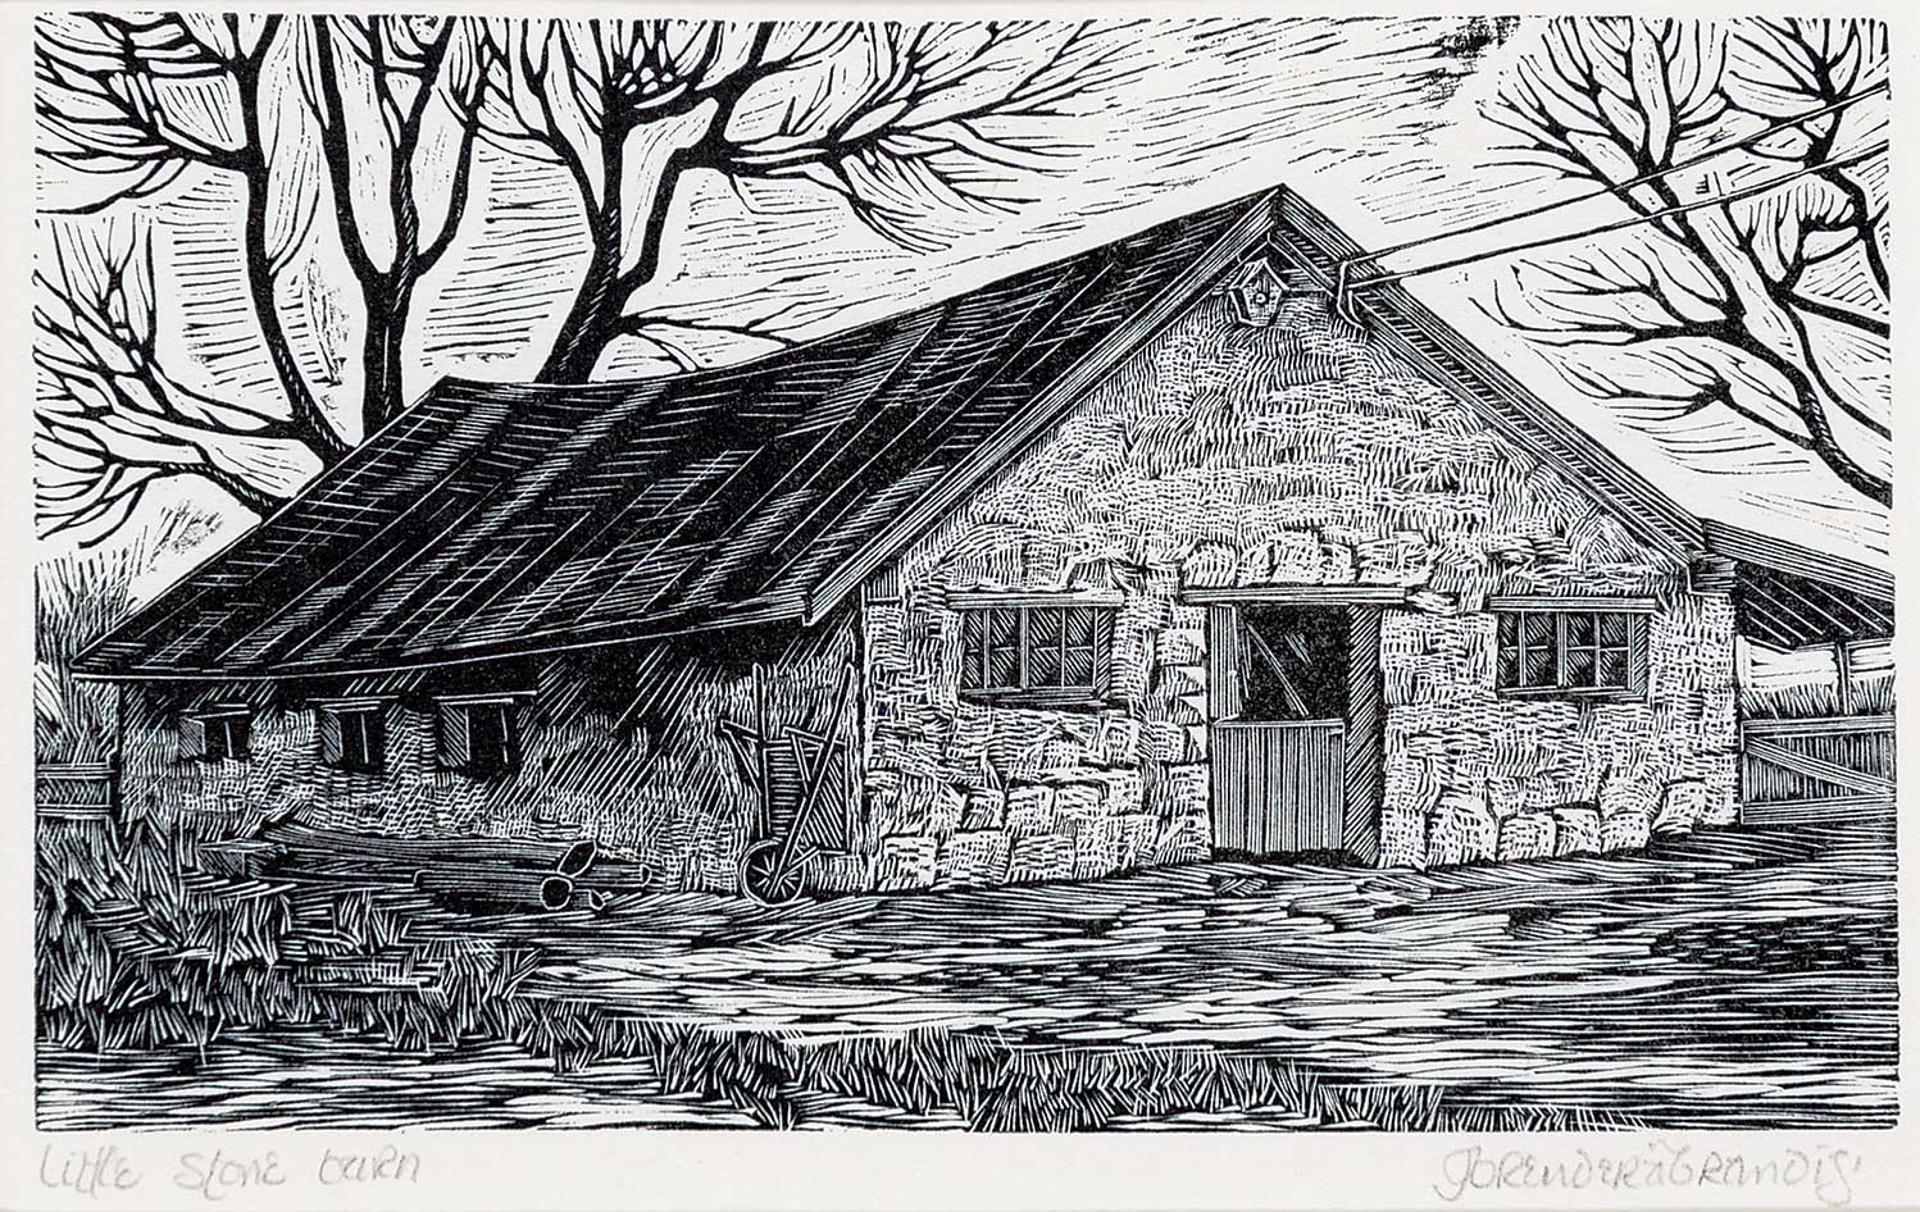 Gerard William Brender a Brandis (1942) - Little Stone Barn